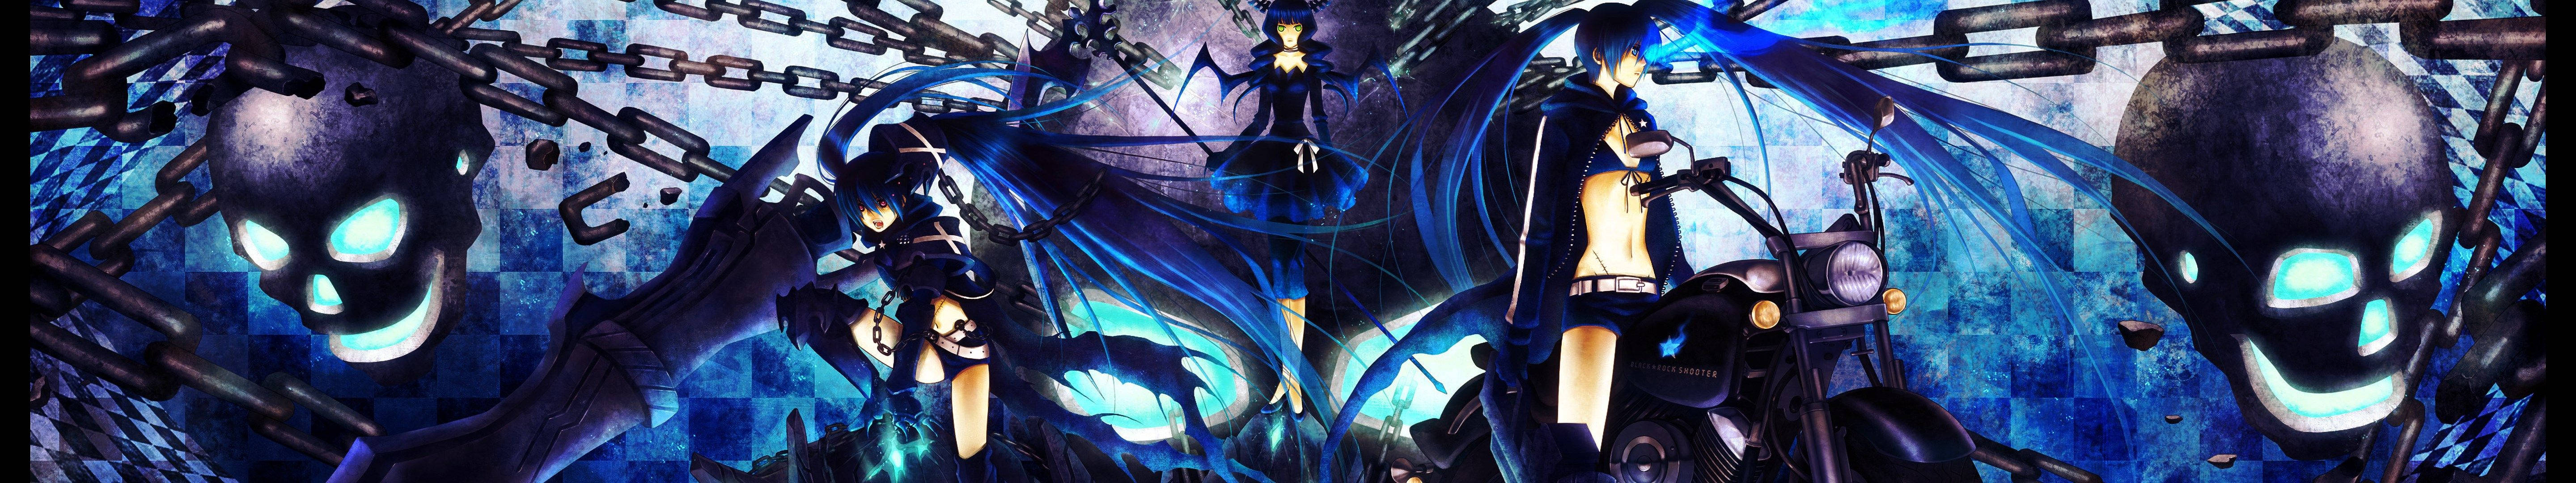 Black Rock Shooter Blue Anime Girl Wallpaper